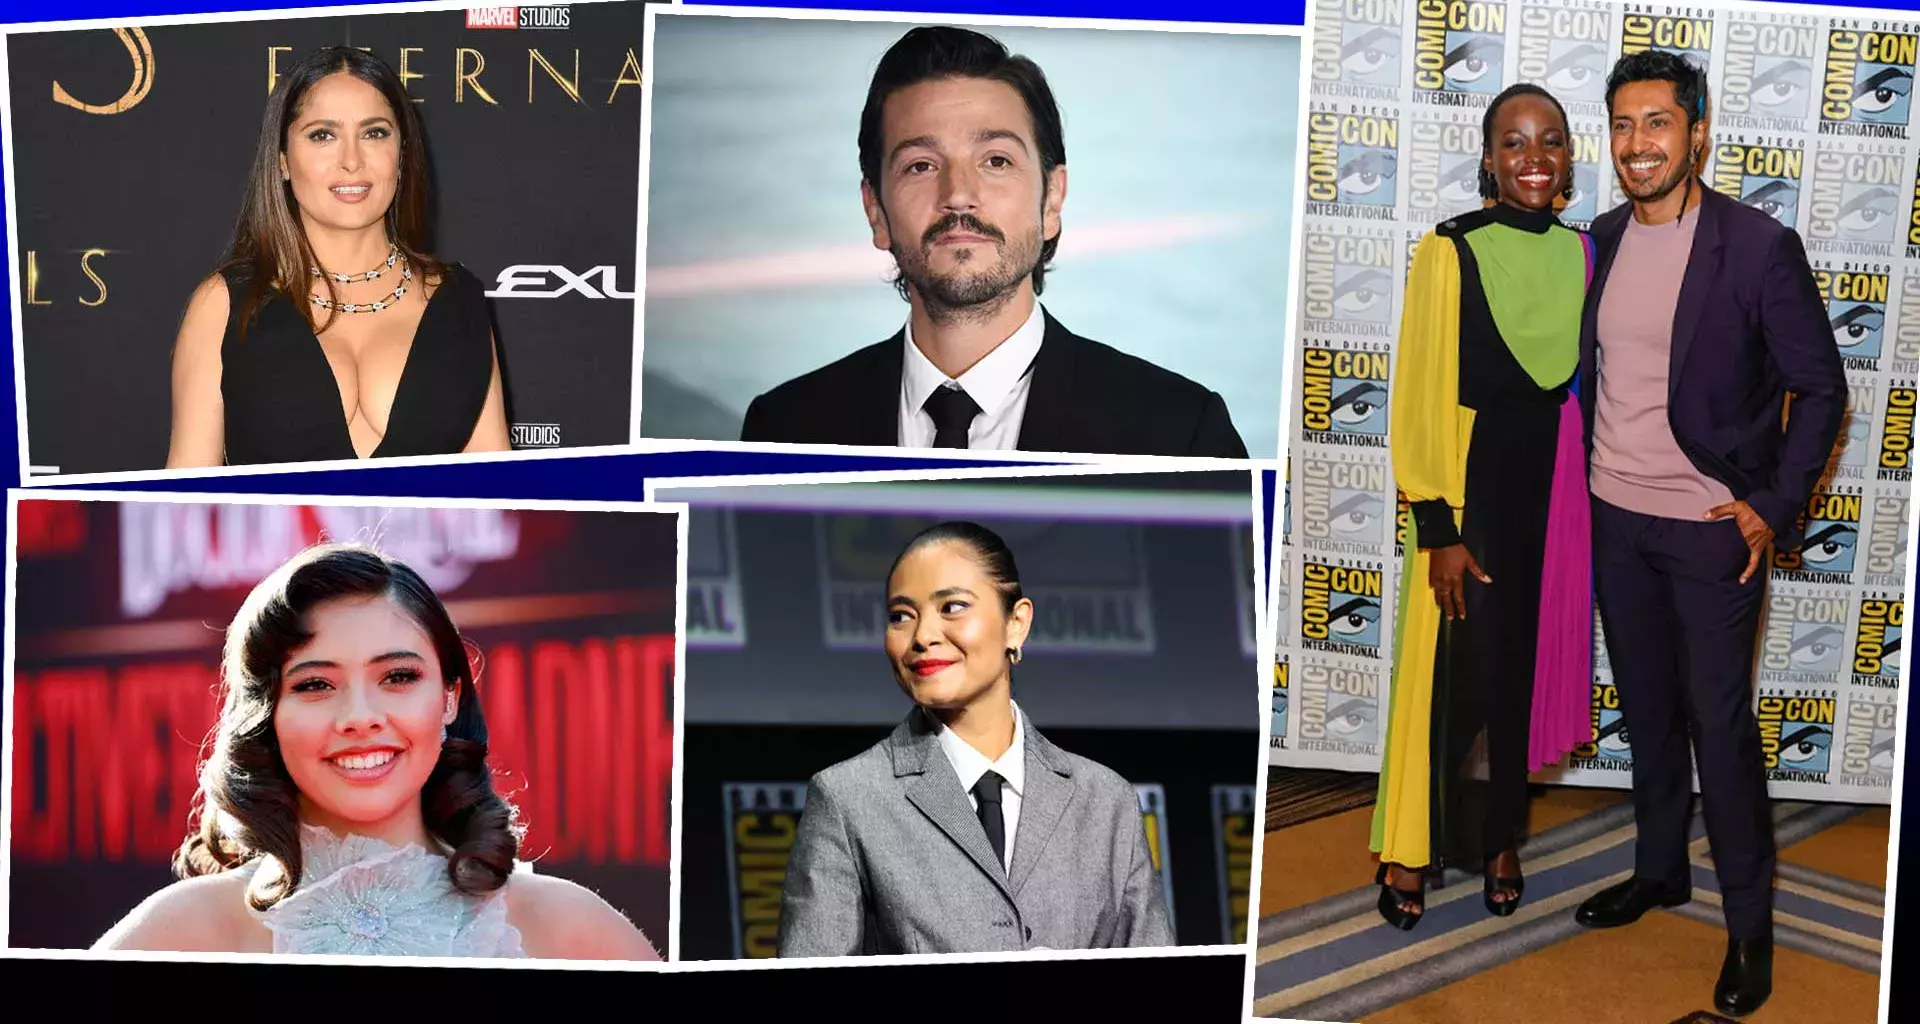 Actrices y actores mexicanos han logrado obtener papeles principales en megaproducciones en Hollywood.